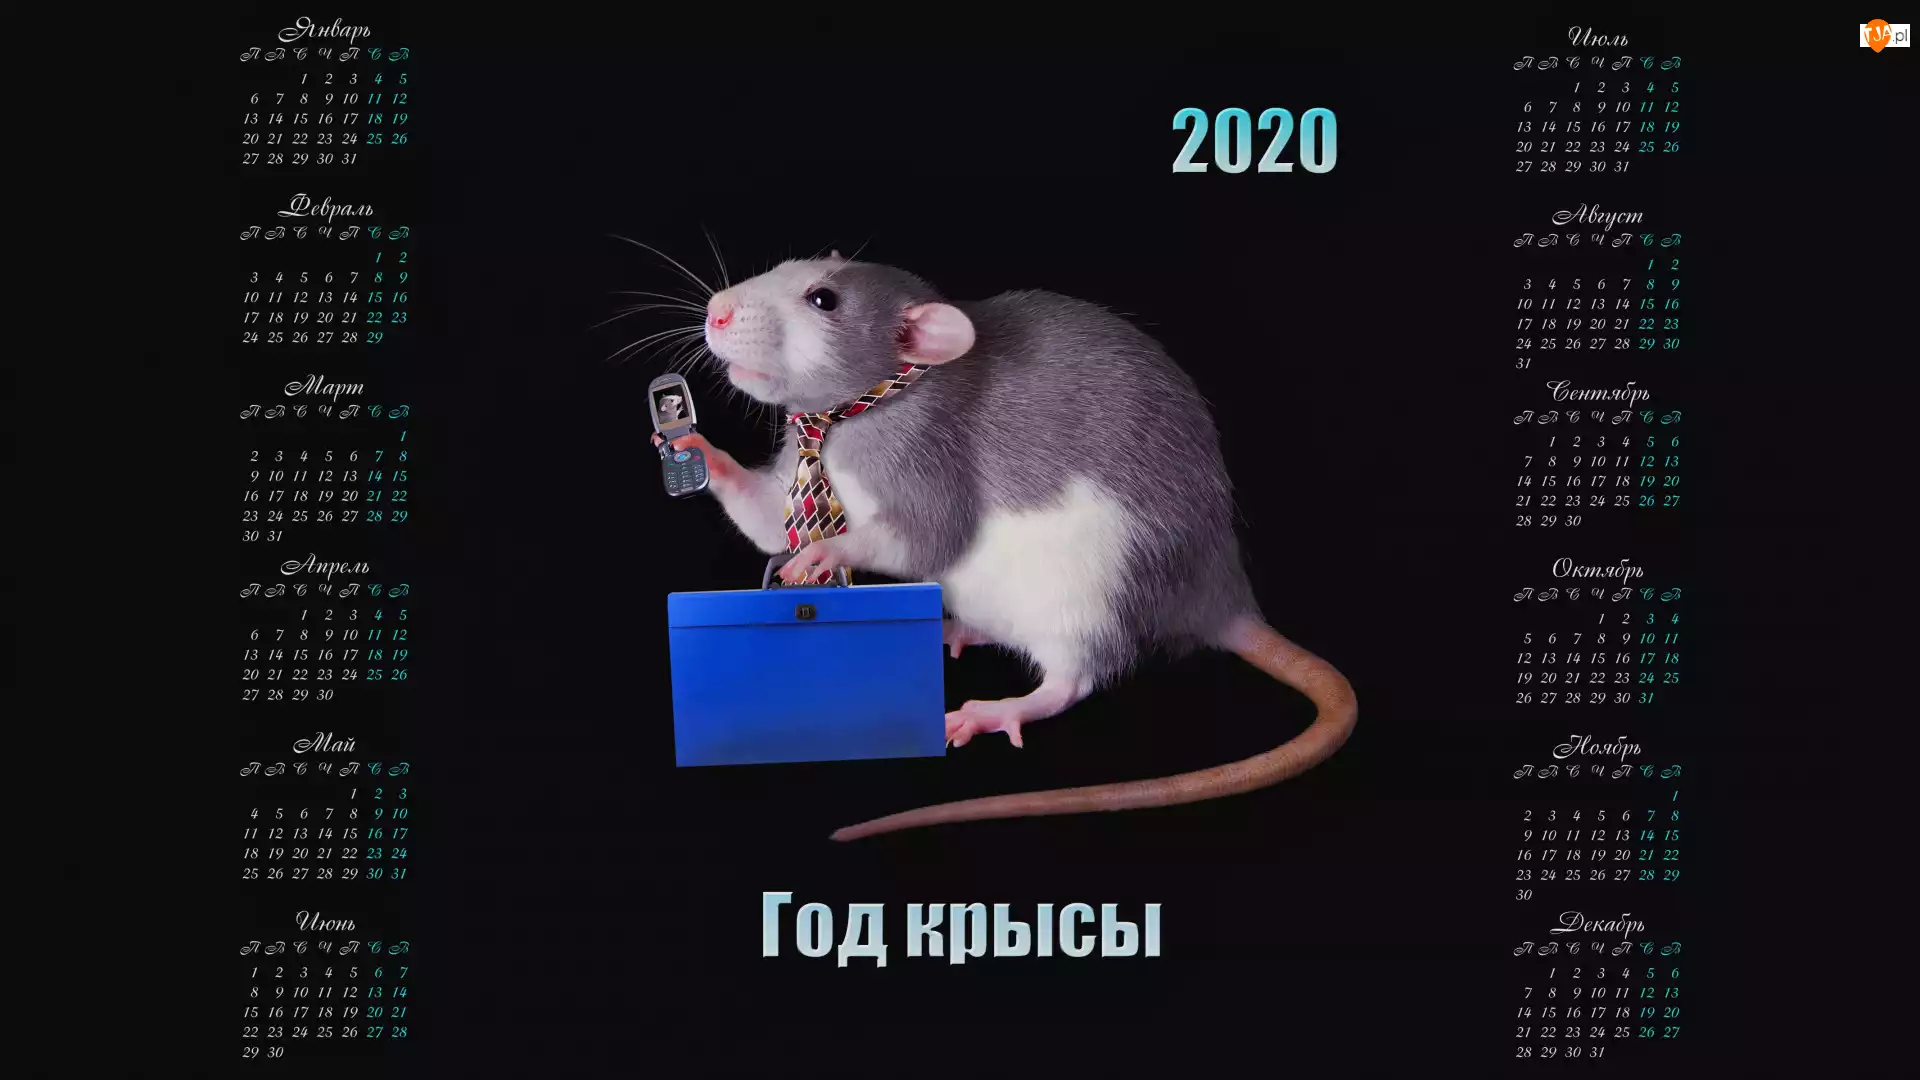 2020, Kalendarz, Krawat, Teczka, Szczur, Telefon